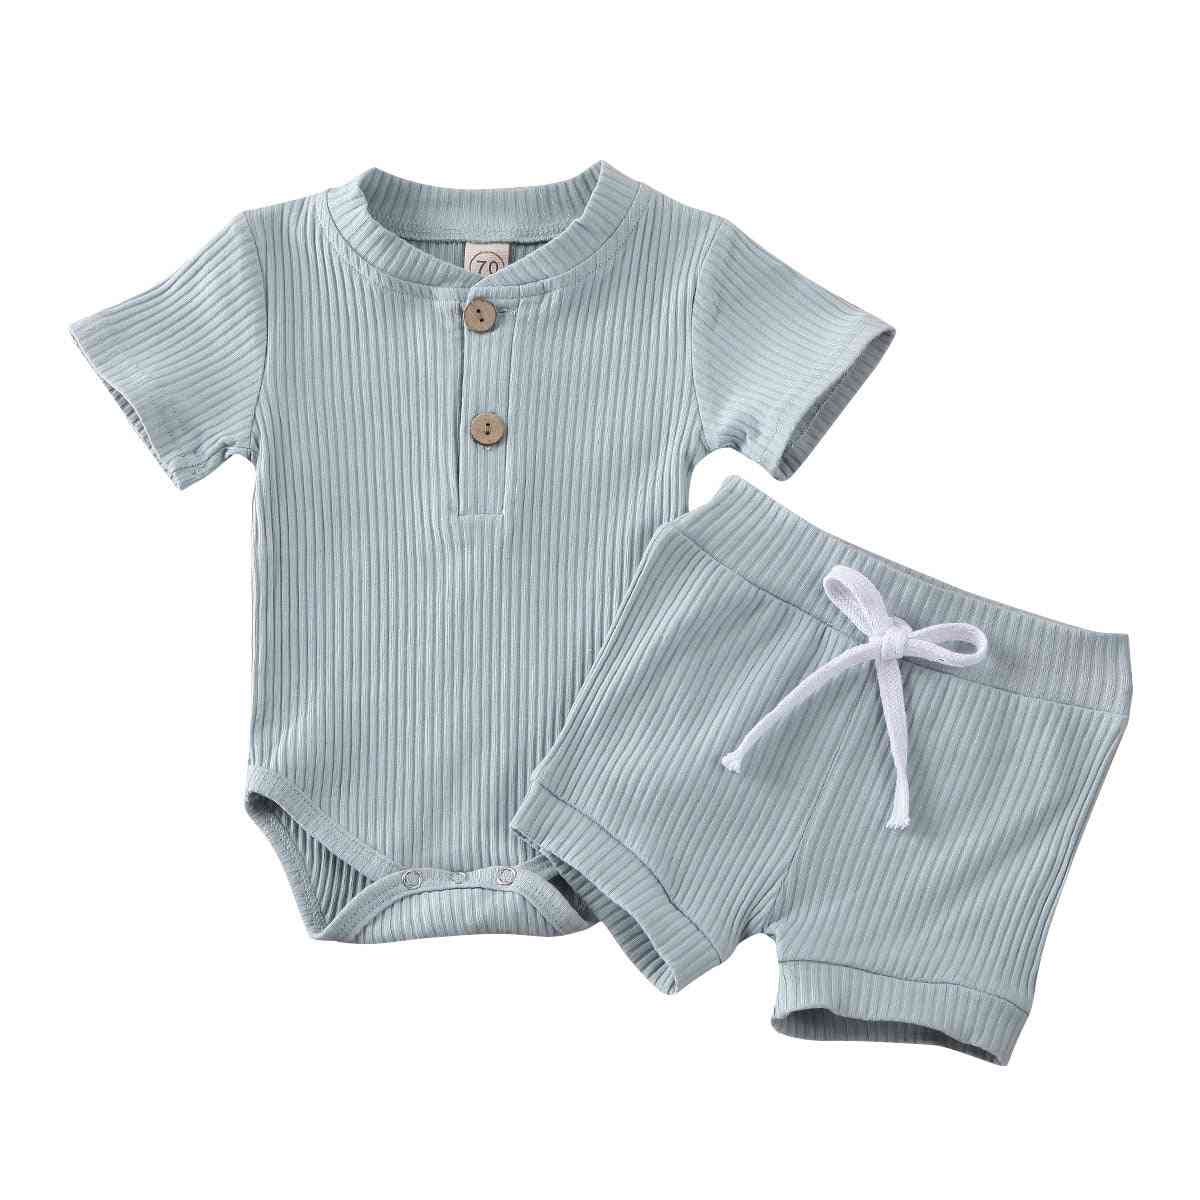 בגדי קיץ לתינוק, שרוול קצר, תלבושות בגד גוף לילדים - כחול 1/6 מטר